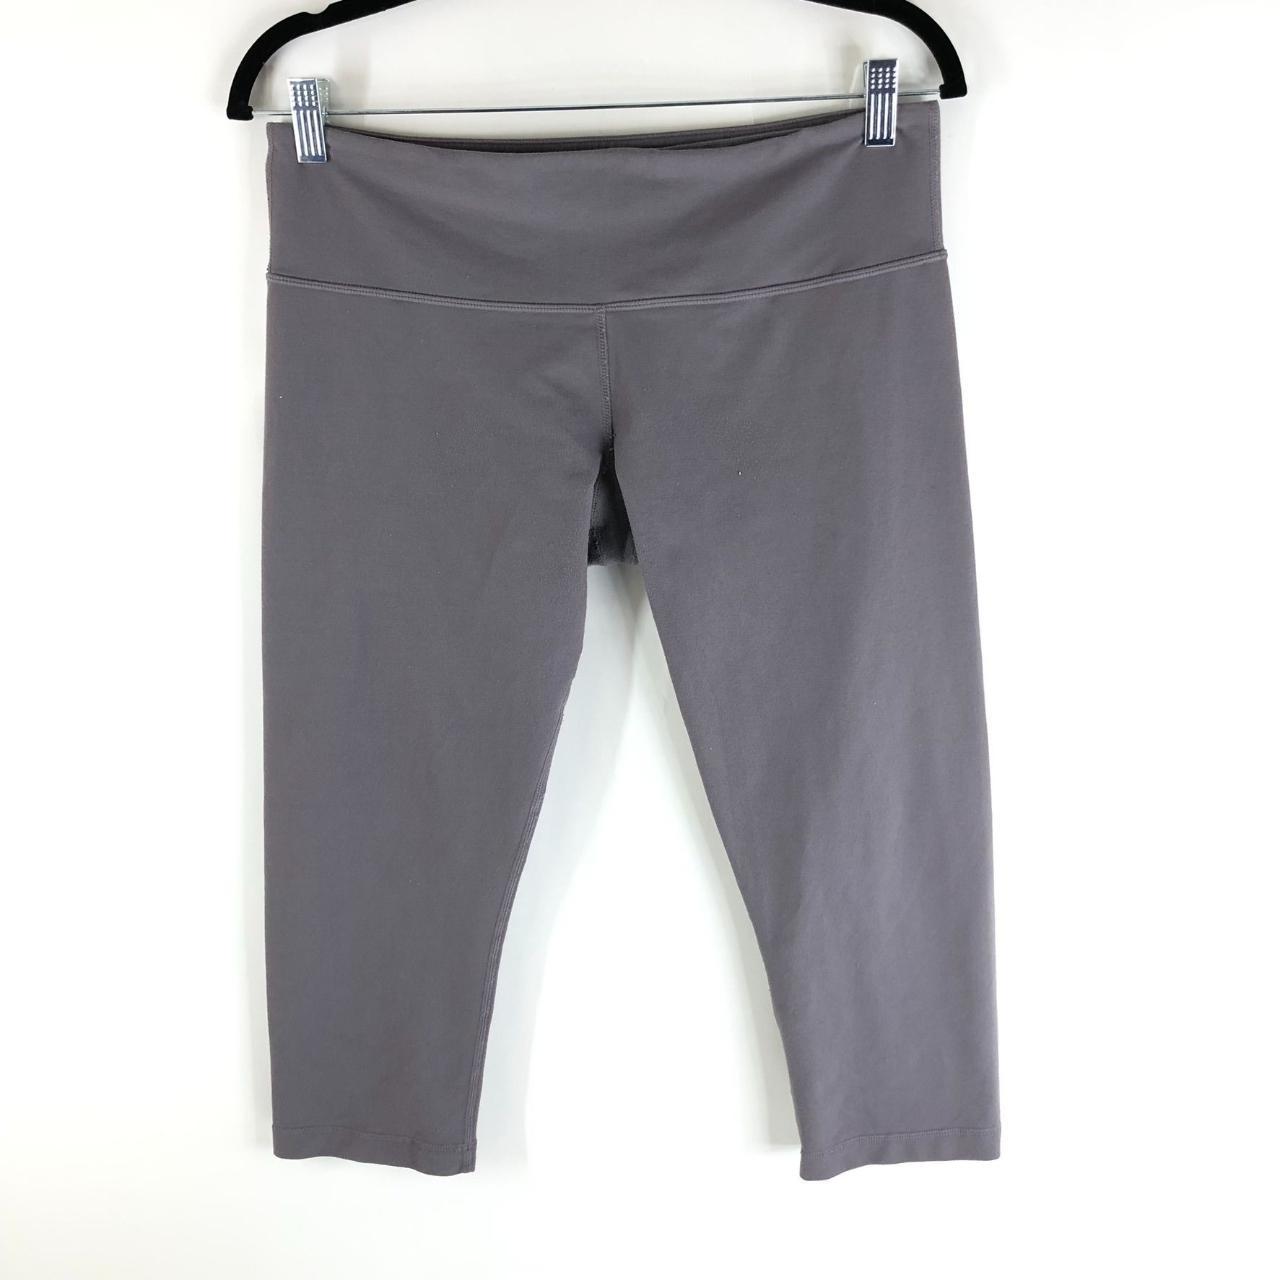 lululemon wunder under grey leggings (free - Depop